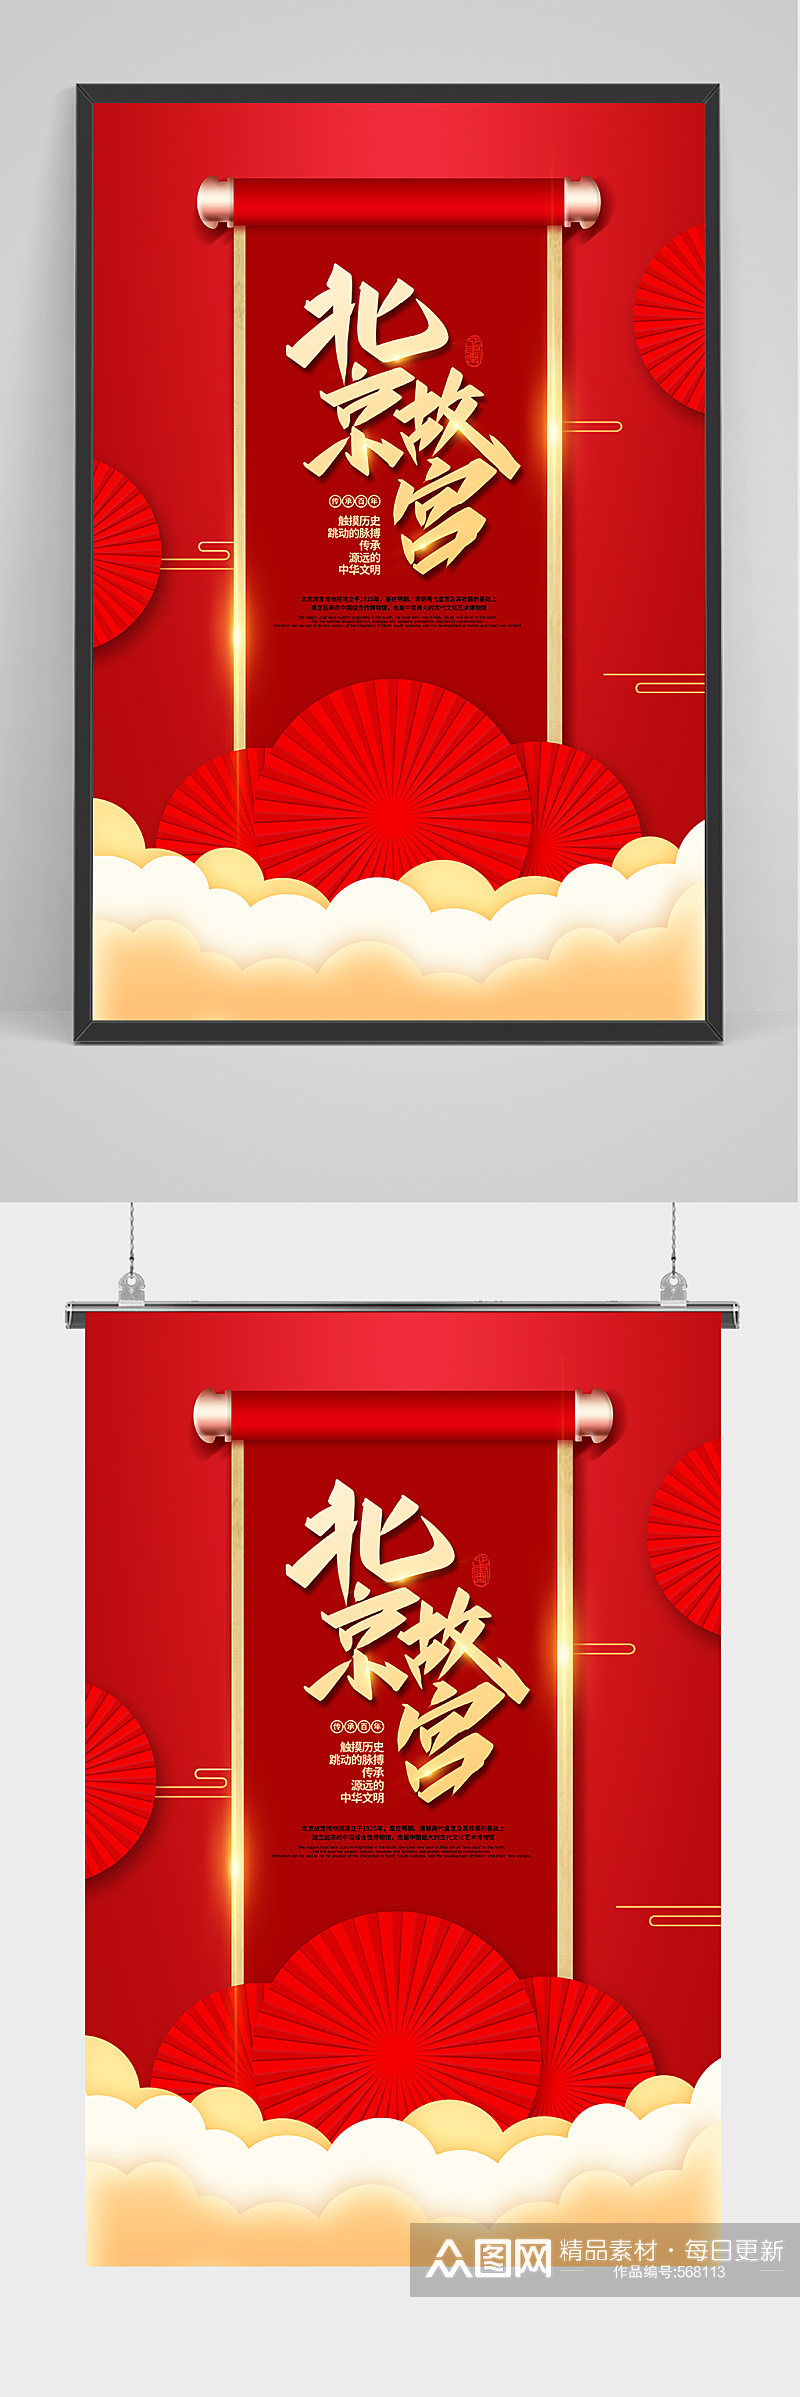 红色大气北京故宫海报素材